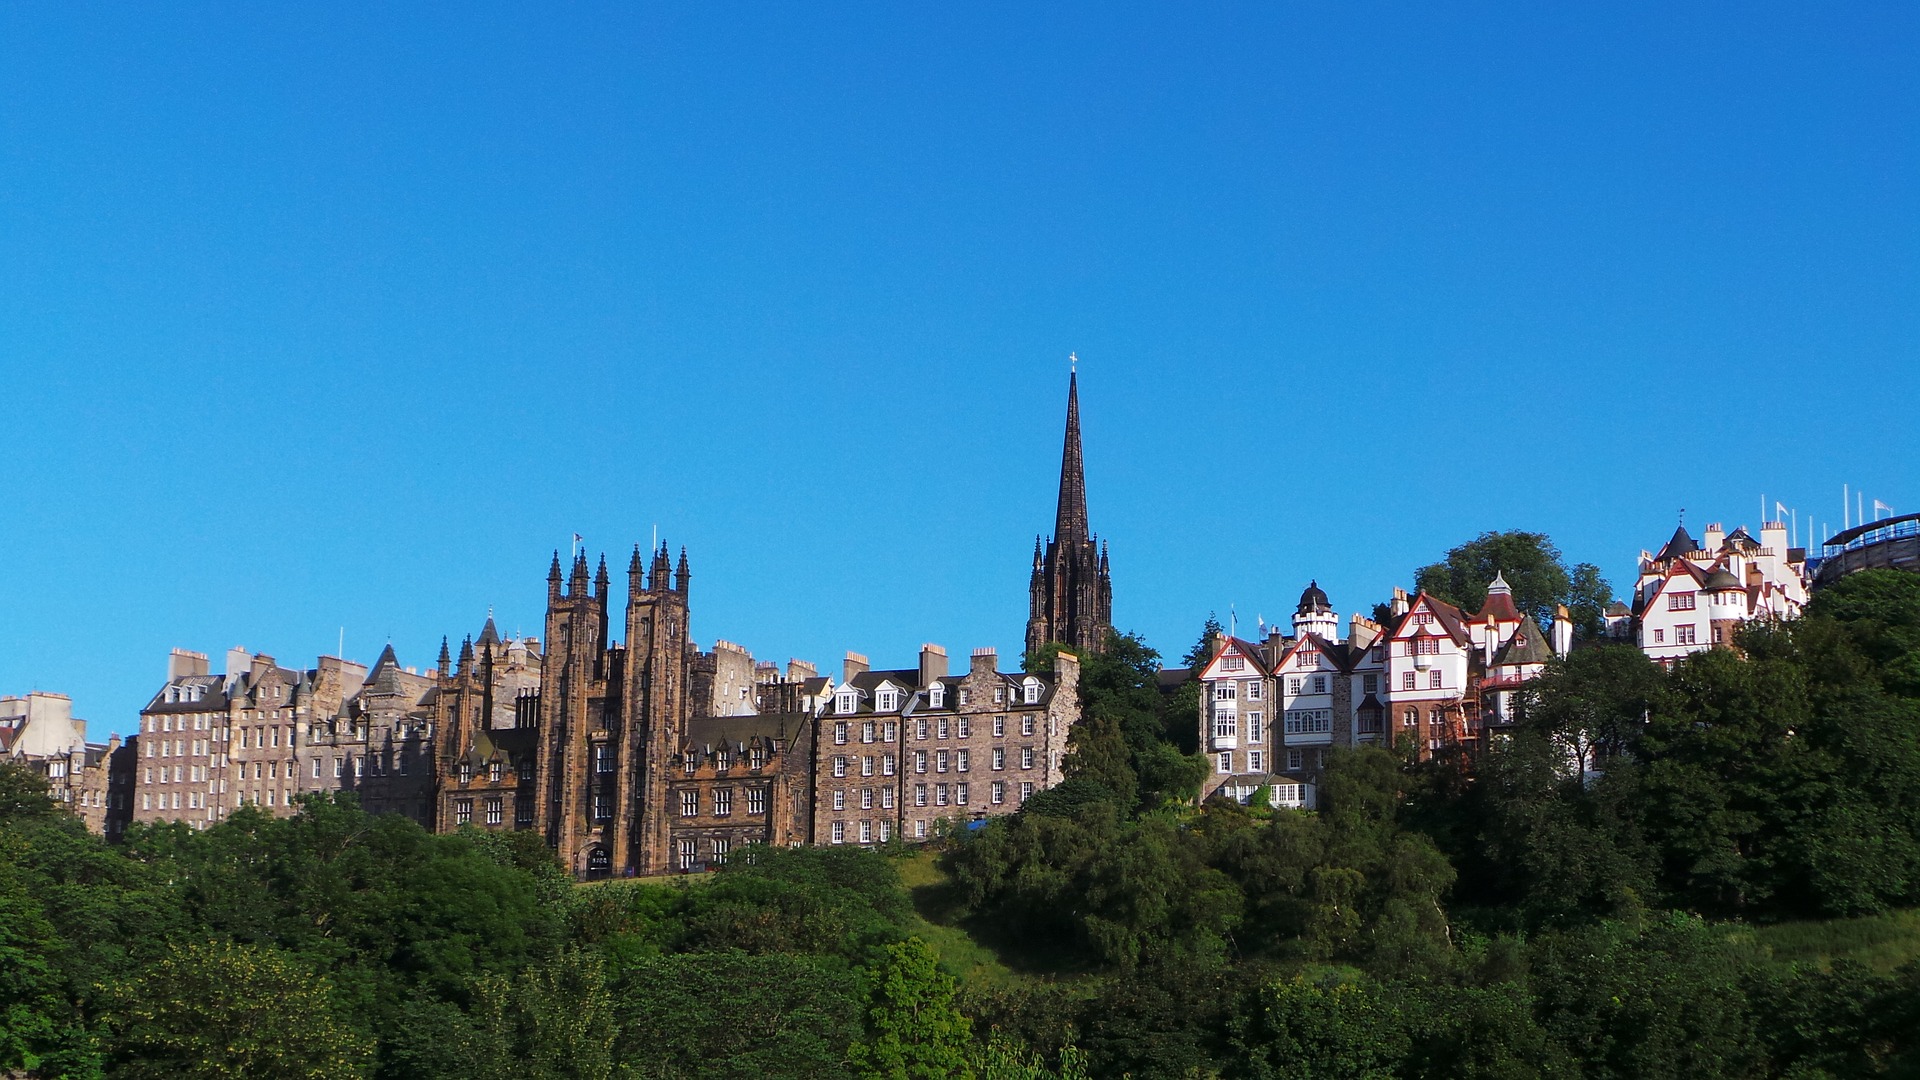 Edinburgh named top Scottish city for UK residential investment opportunities